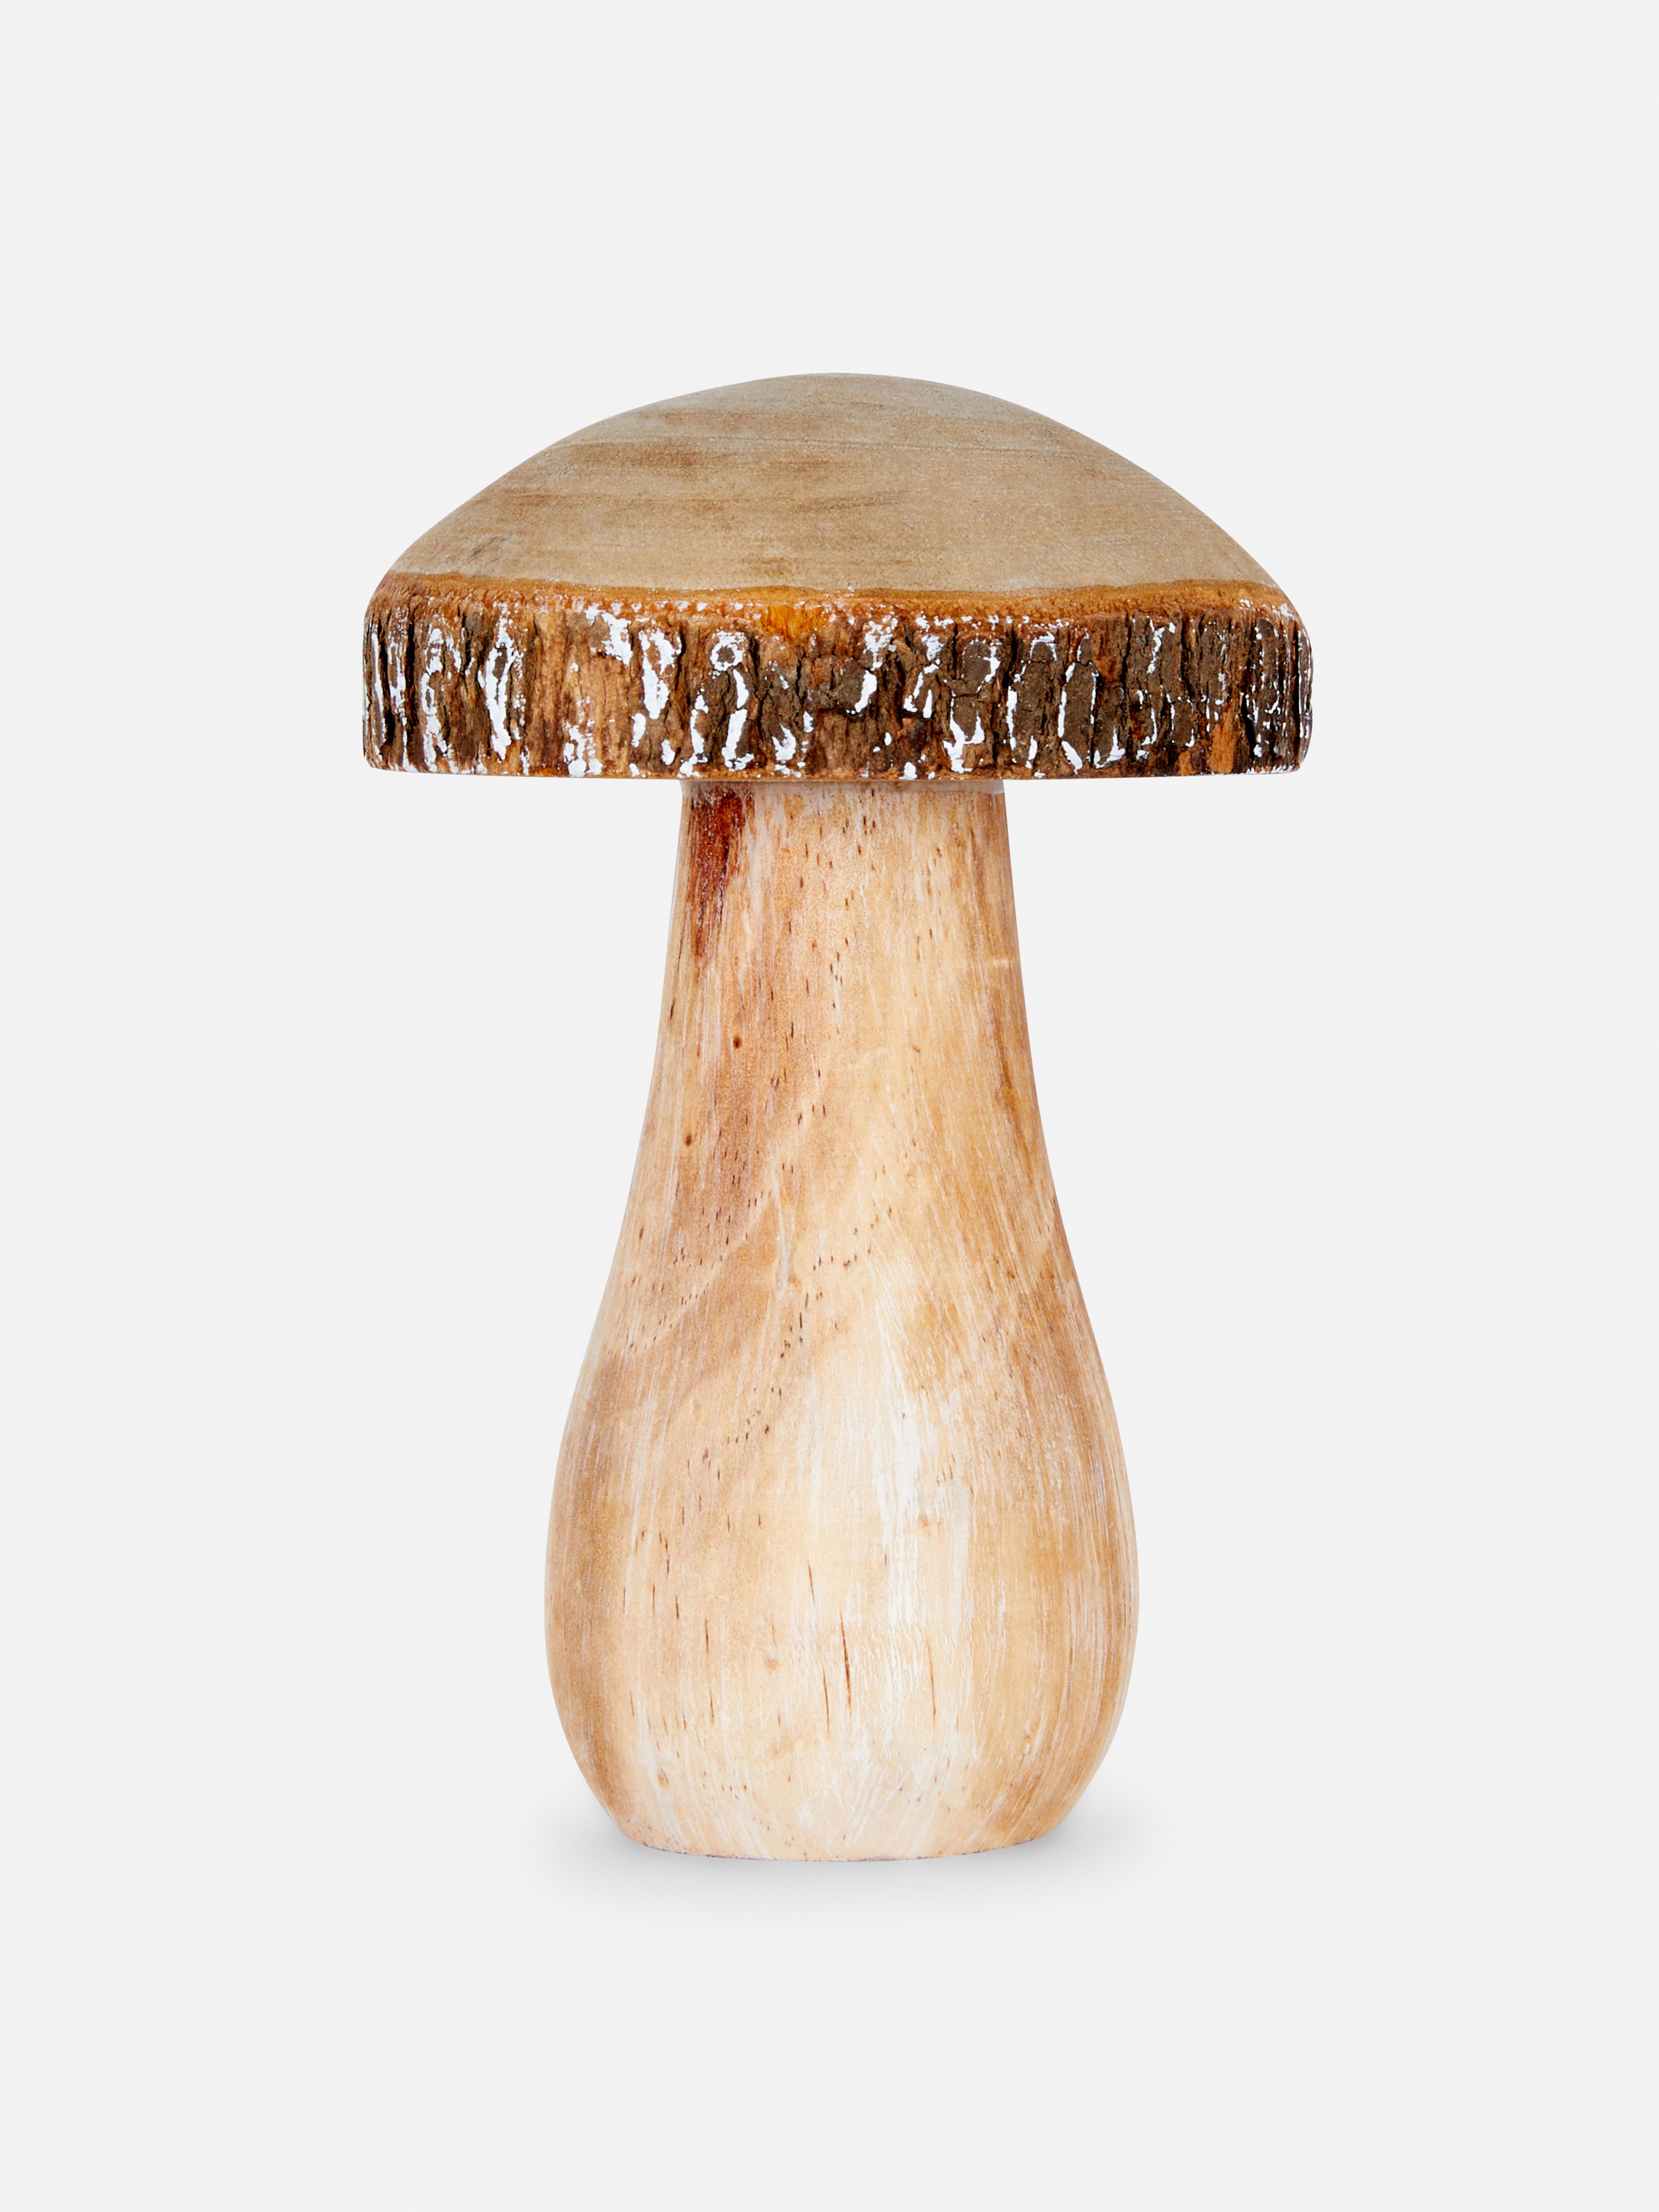 Wooden Mushroom Ornament